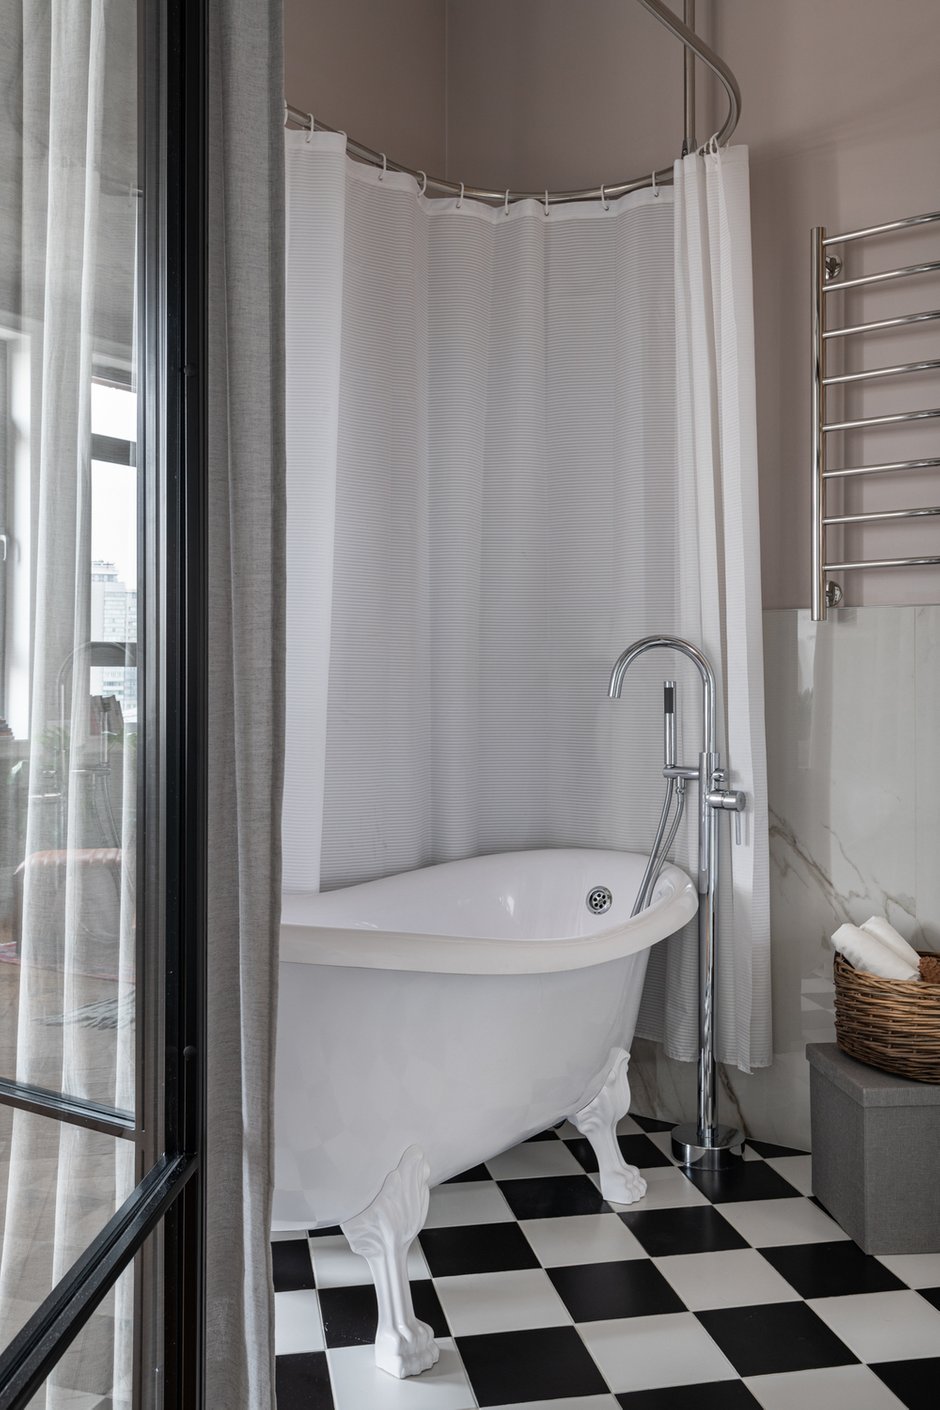 Отдельно стоящая ванна со звериными ножками отсылает к классическим французским интерьерам.